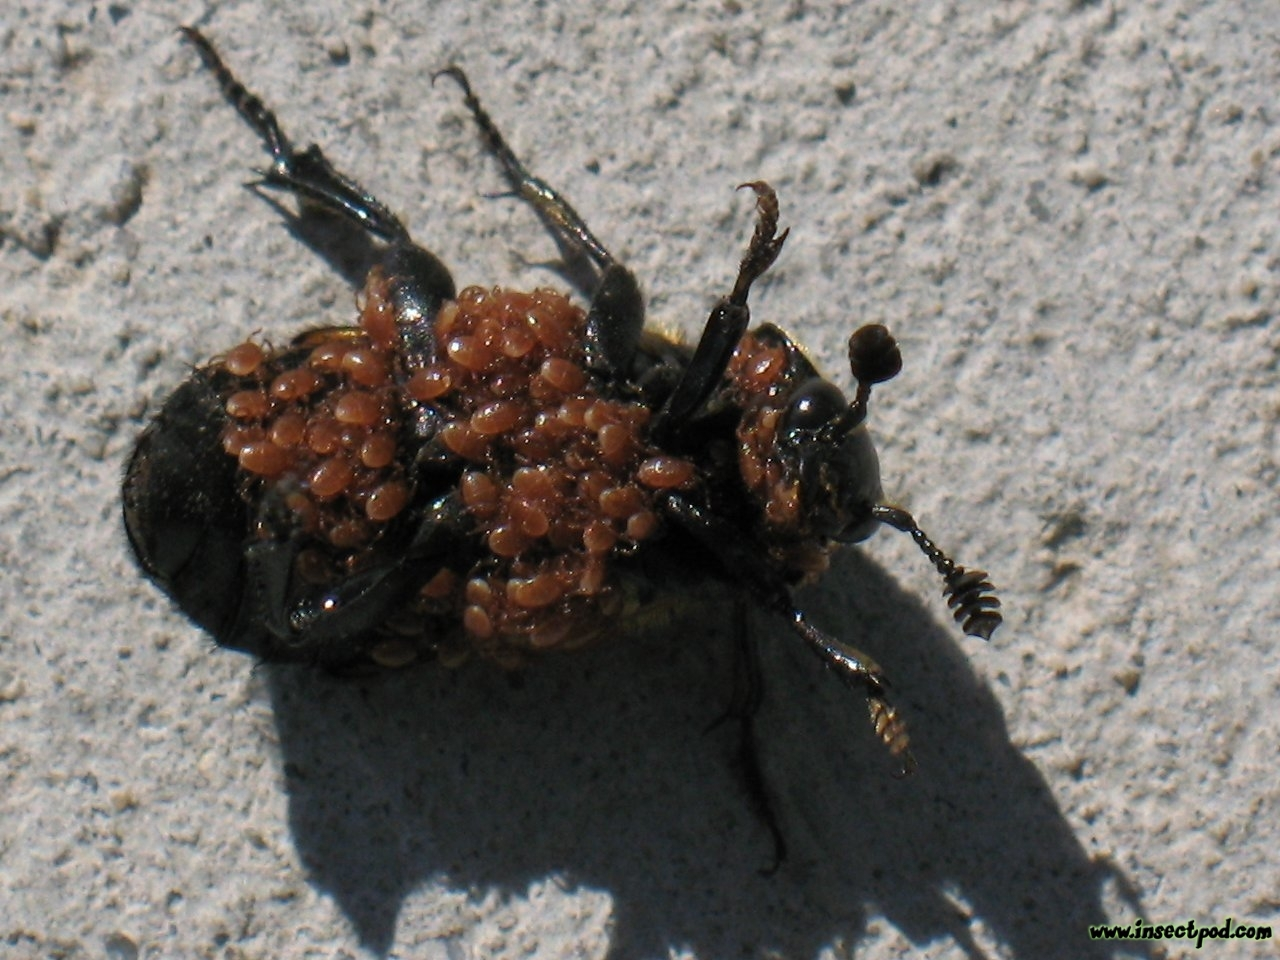 temetőbogarak sikeres lárvanevelését. Az atkák a lárvák bábozódásakor távozó bogarakkal tartanak, vagy a fiatal felnőttekre másznak rá.